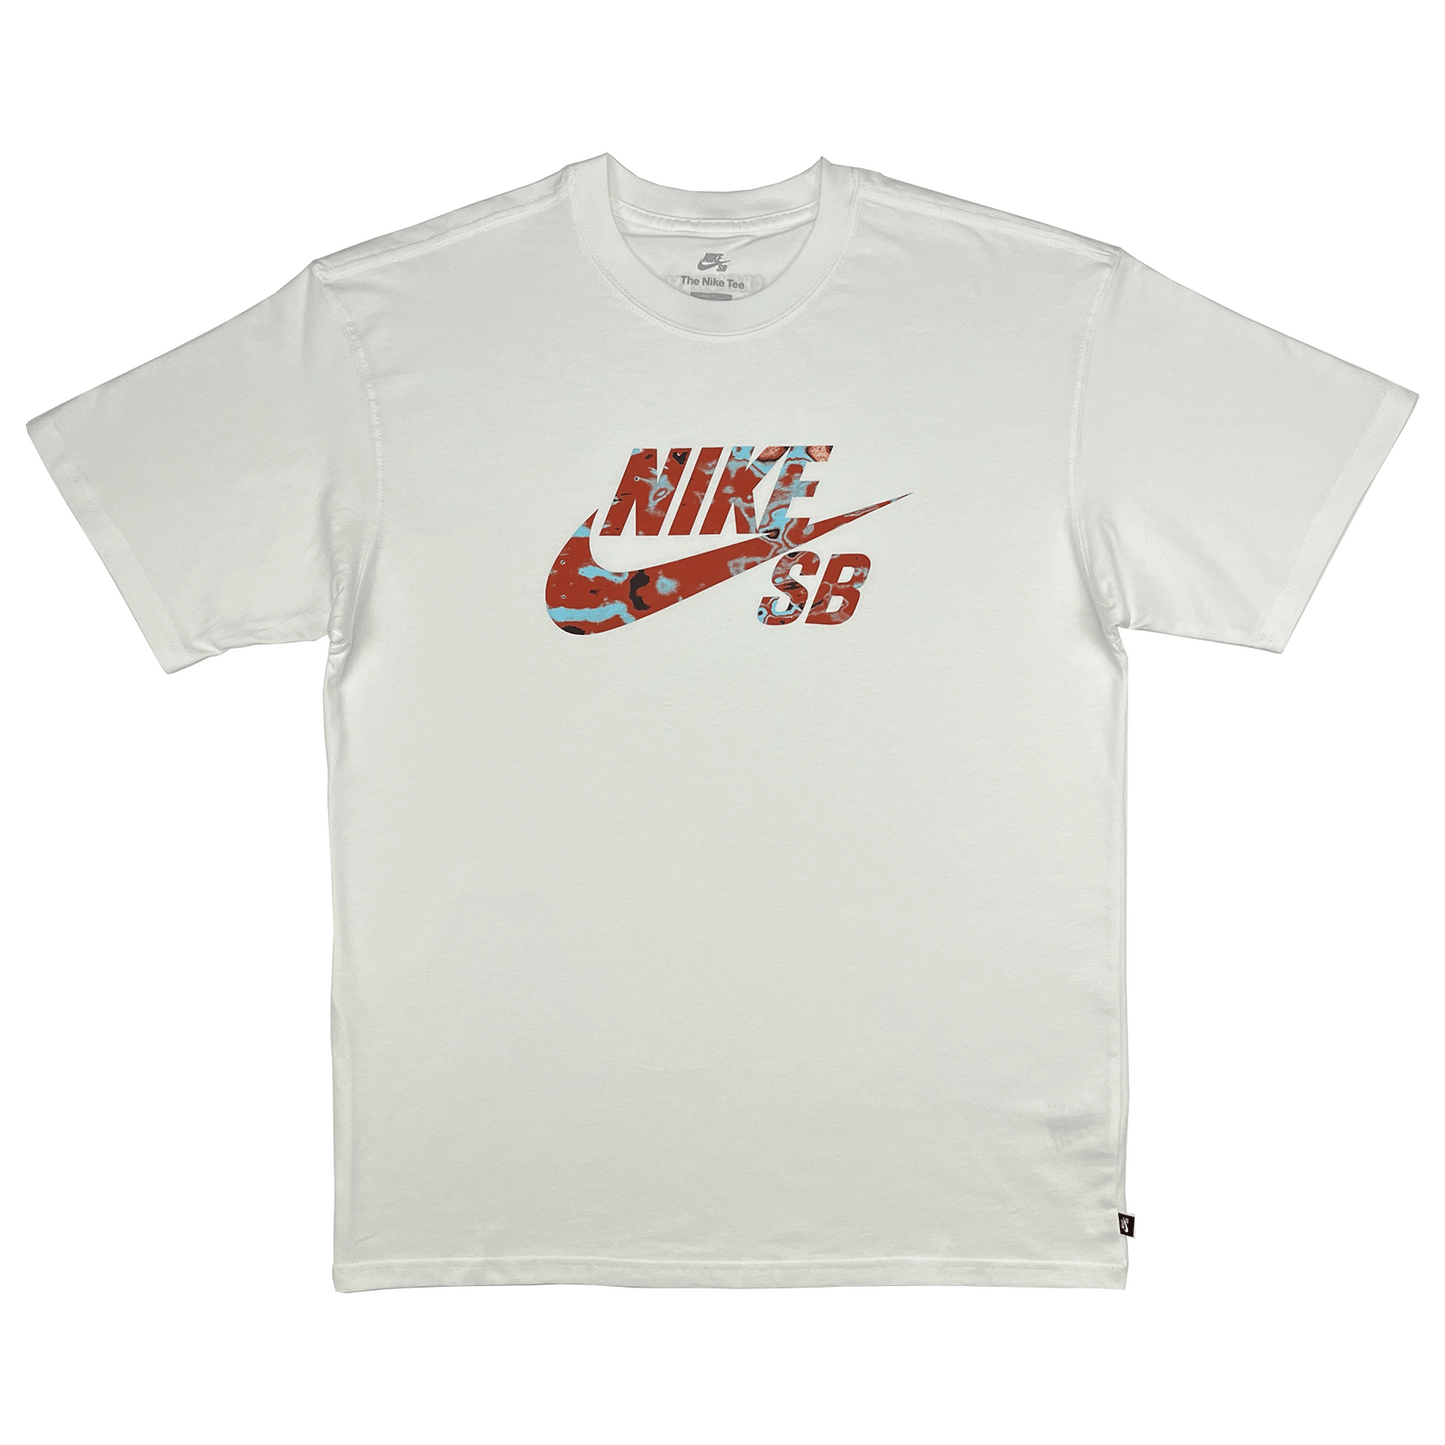 Nike SB Skate-T-Shirt XL